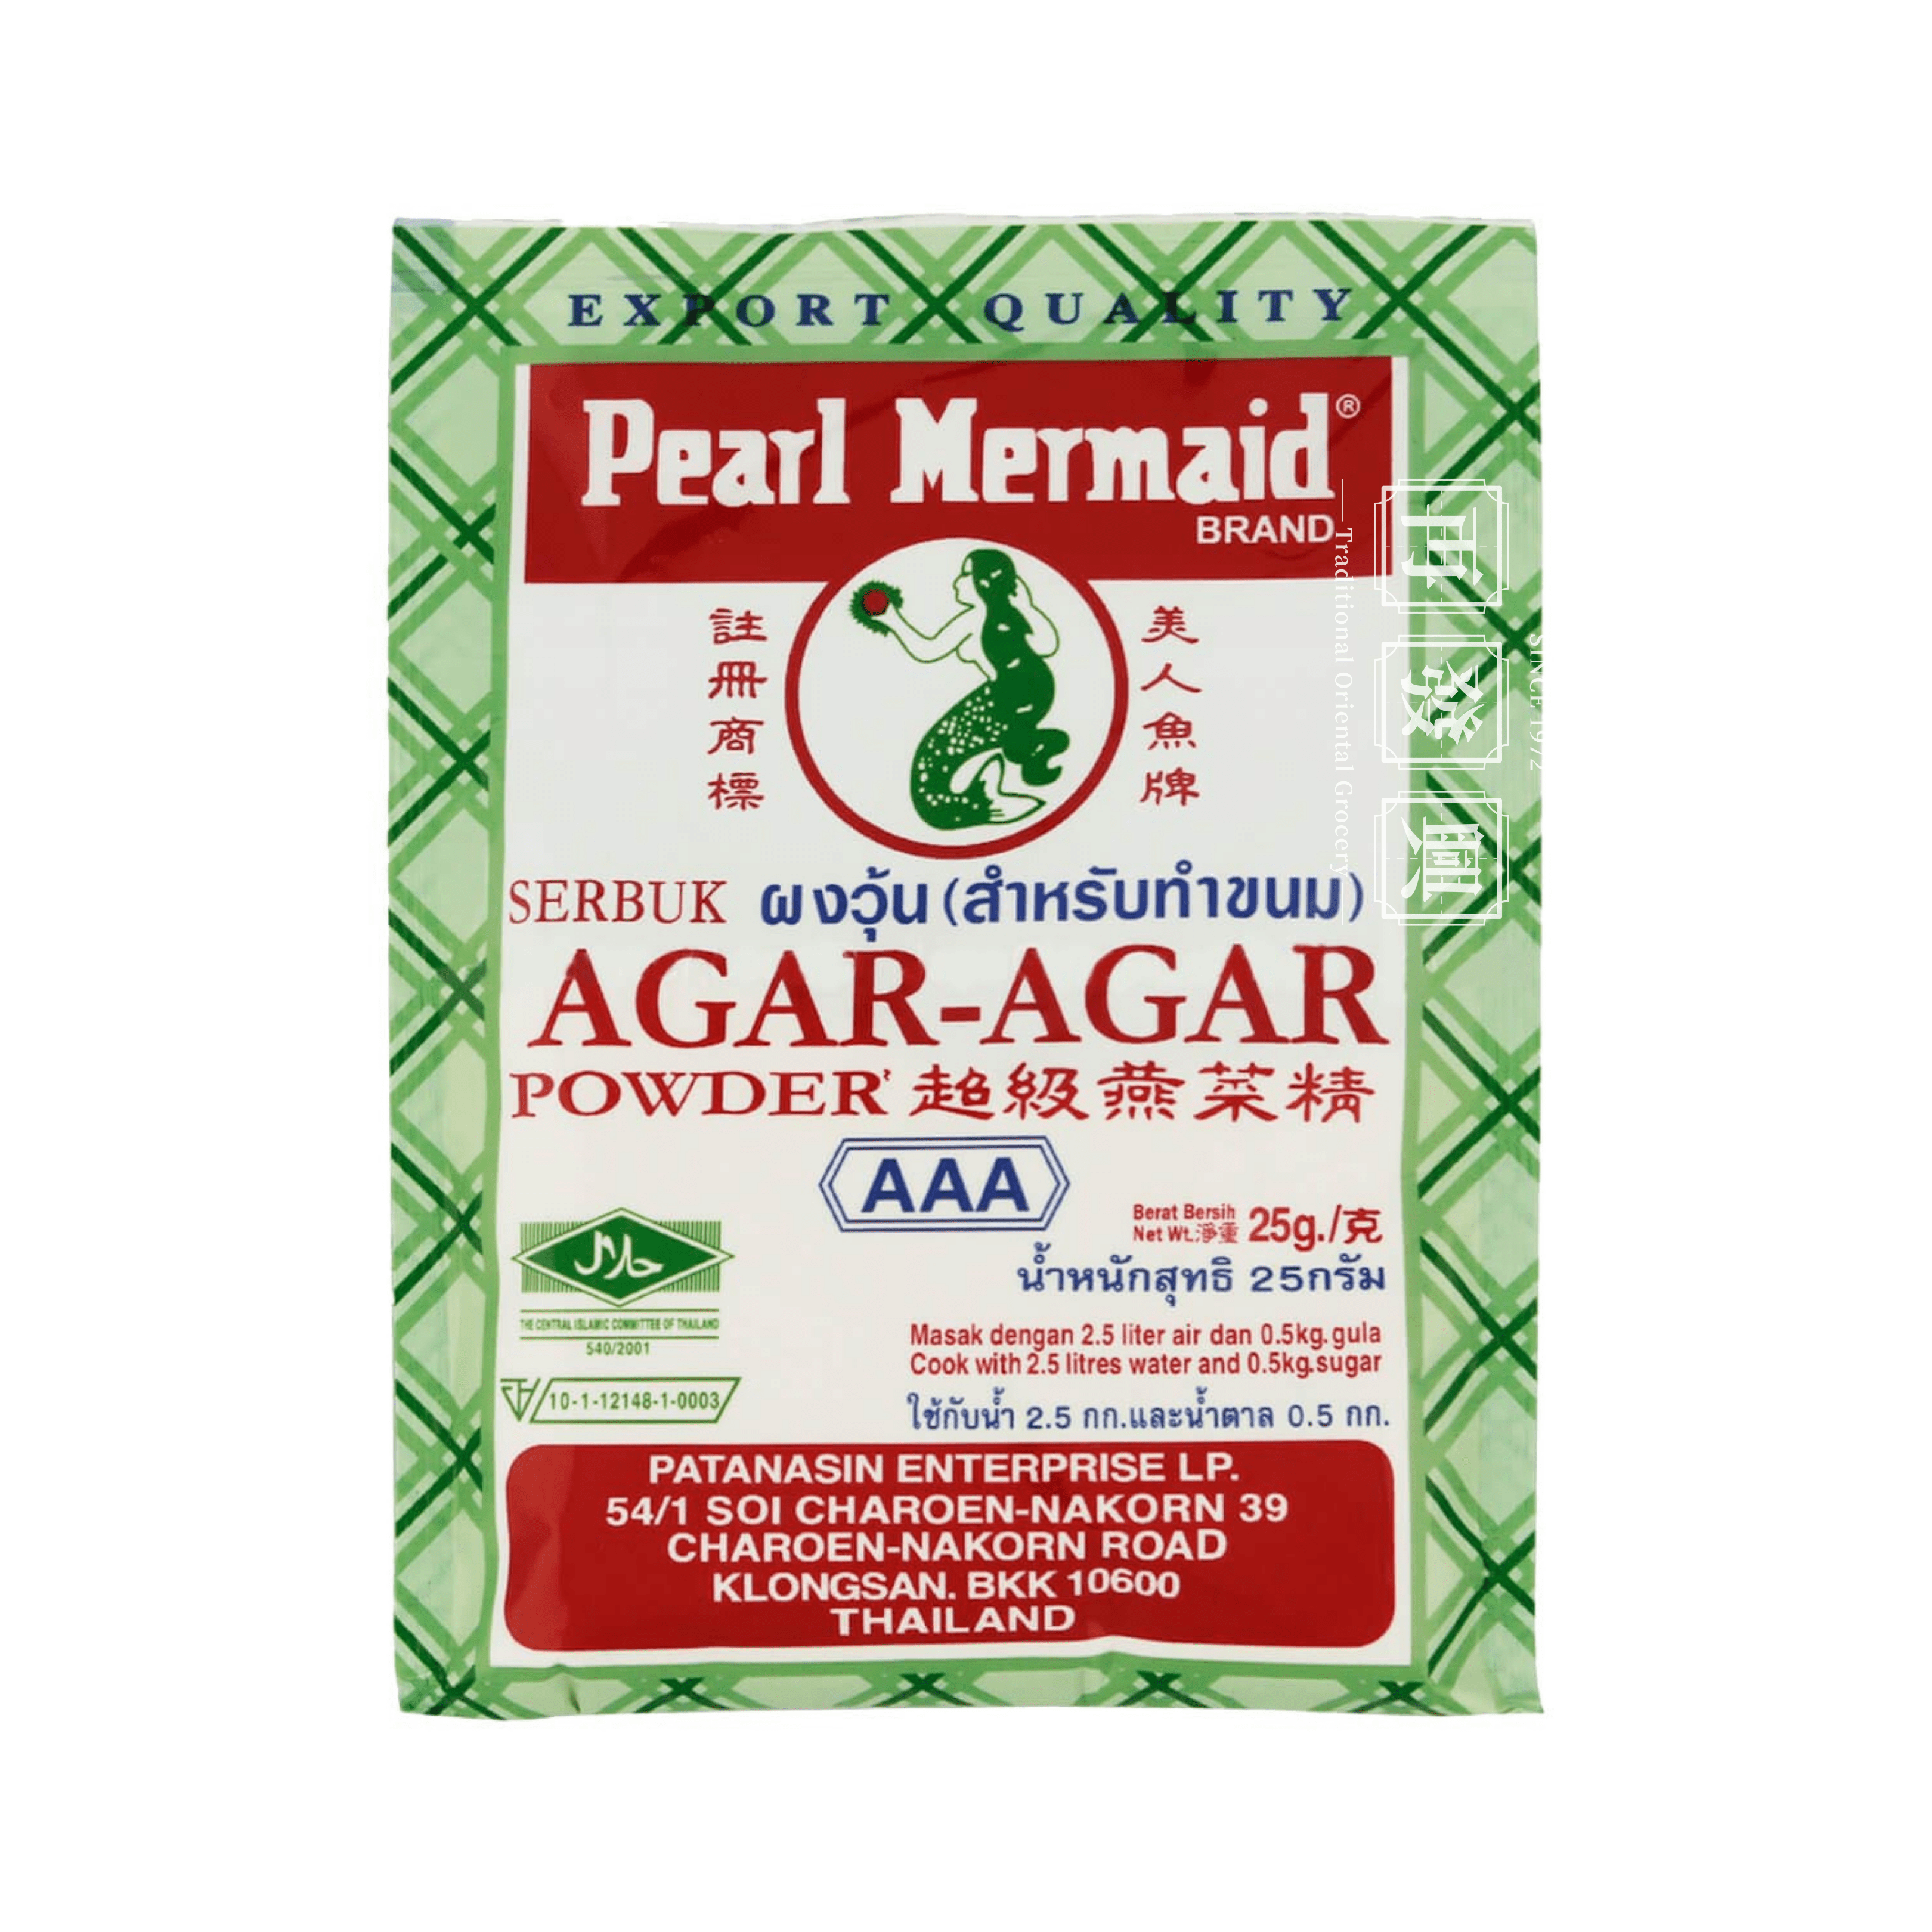 AAA Pearl Mermaid Brand Agar-Agar Powder 25g